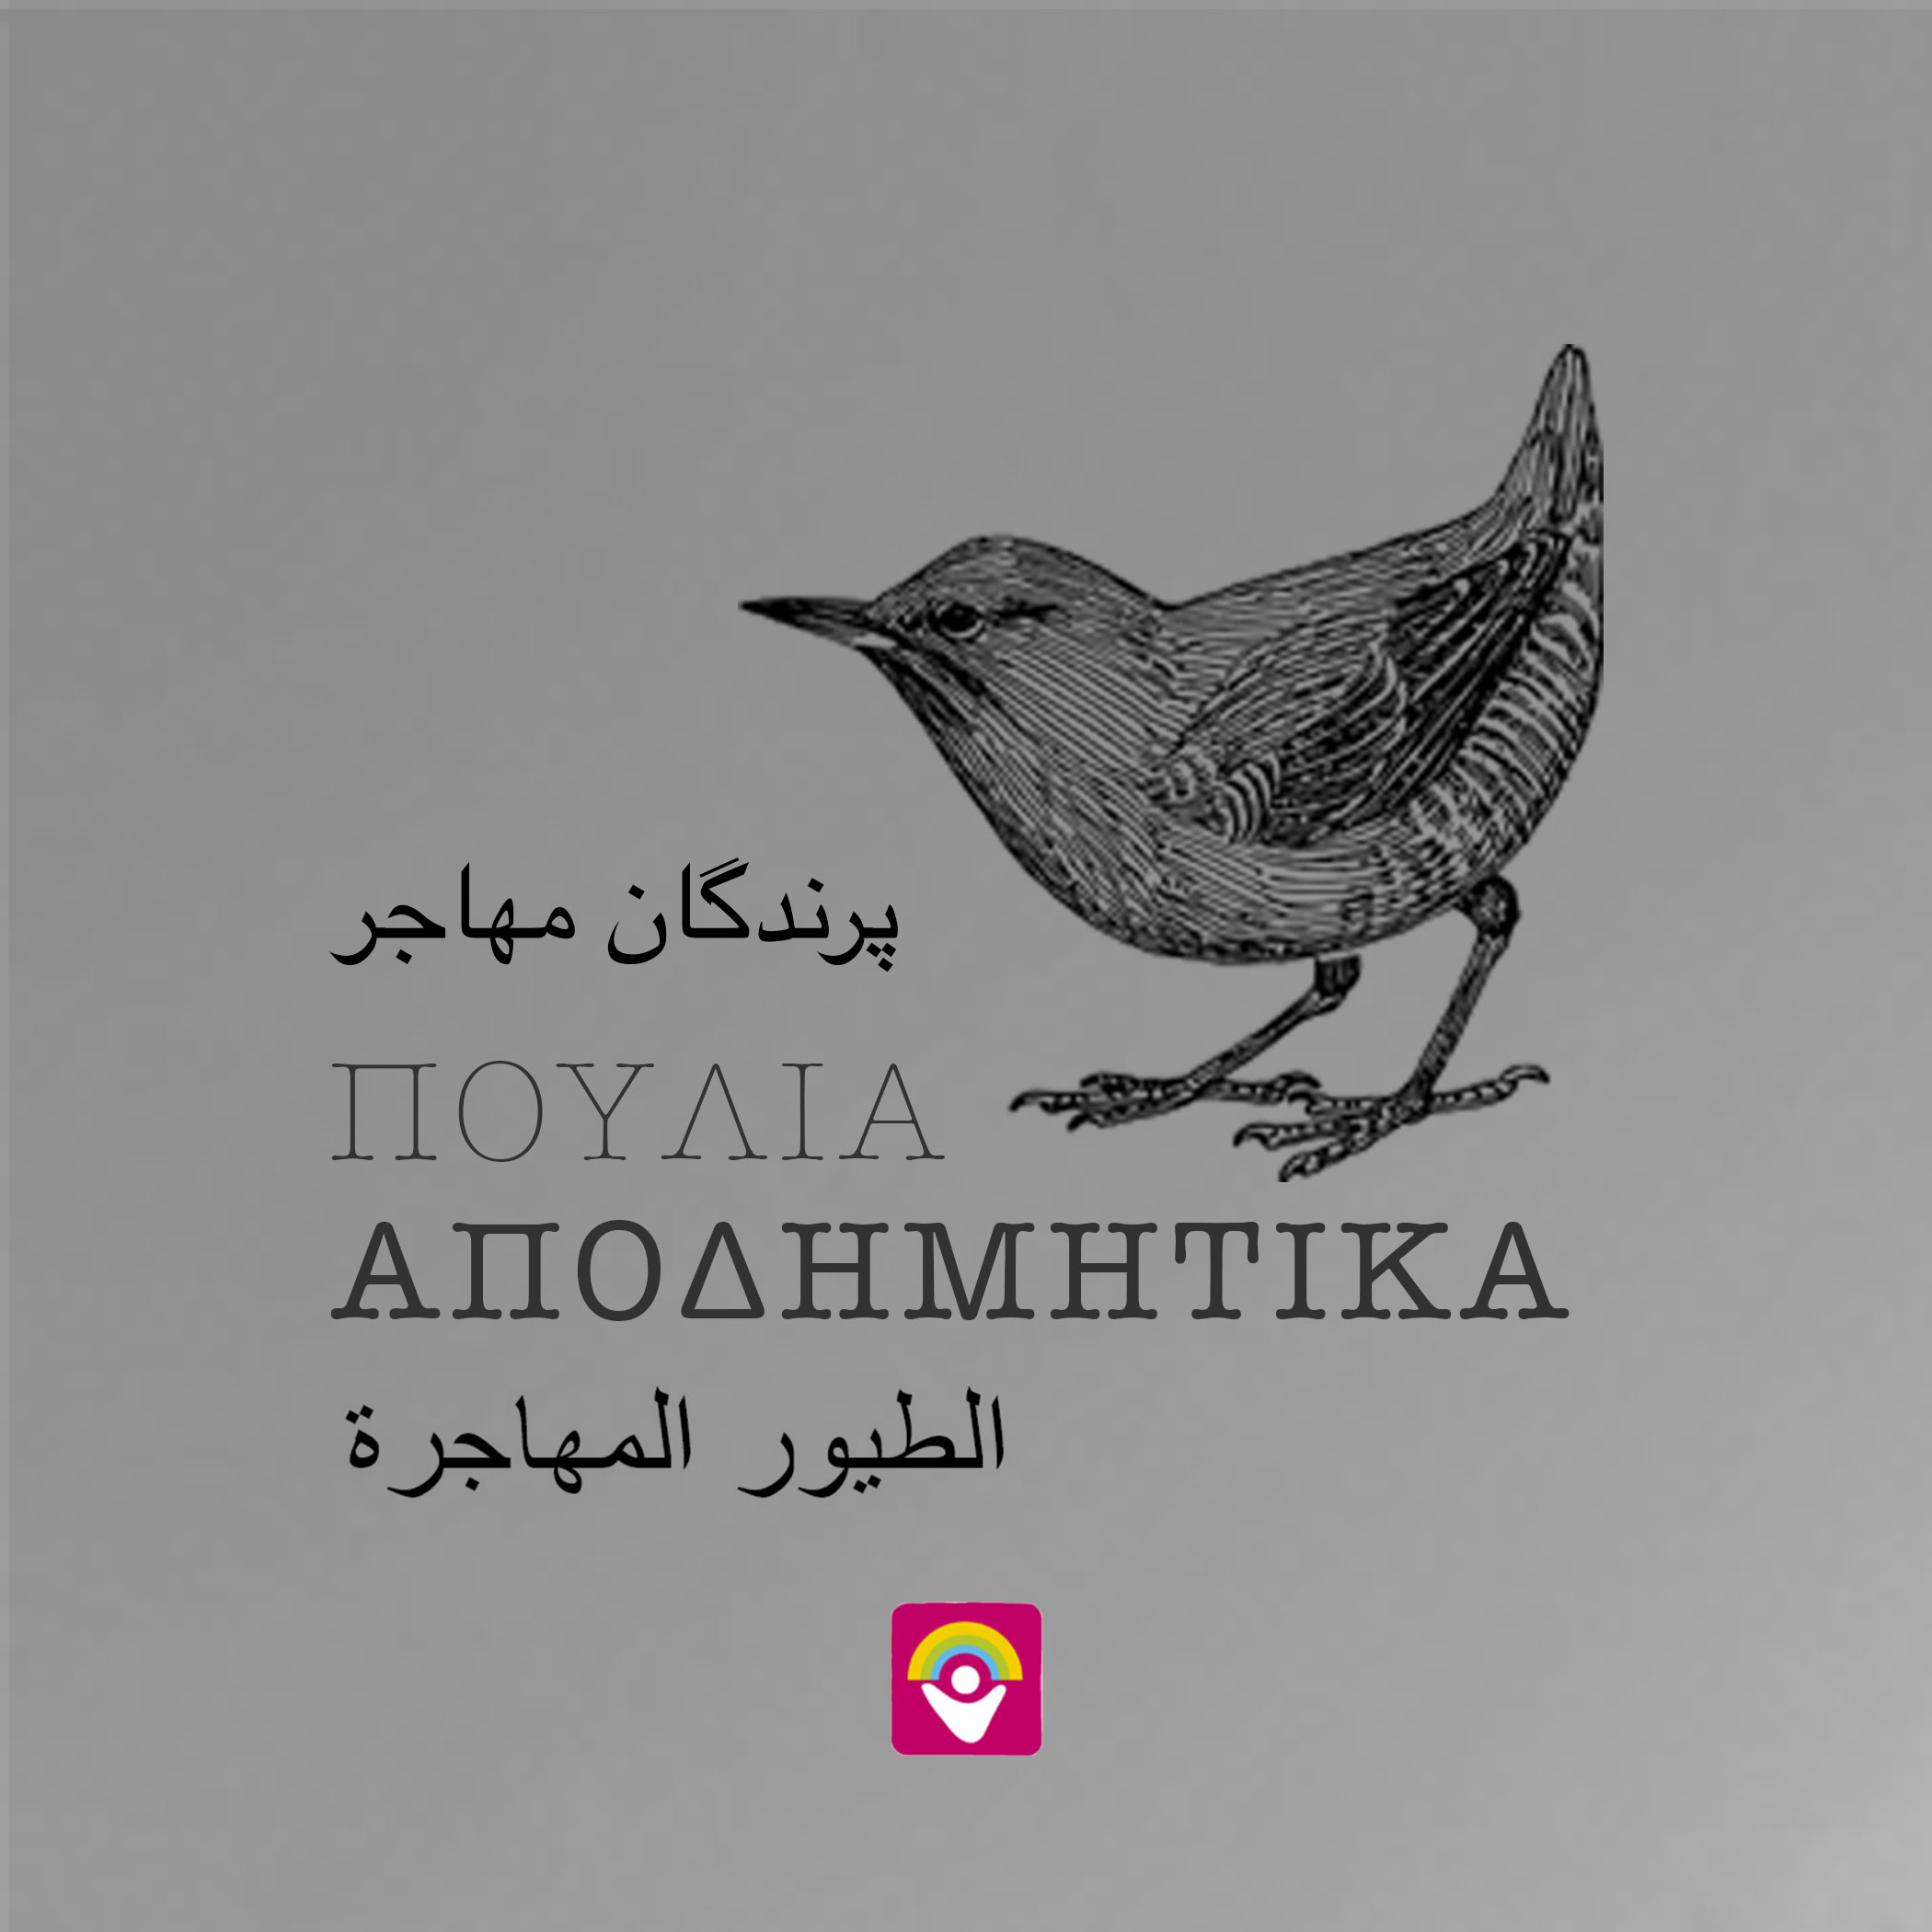 Το 2ο φύλλο της εφημερίδας «Αποδημητικά Πουλιά» στην αγγλική γλώσσα